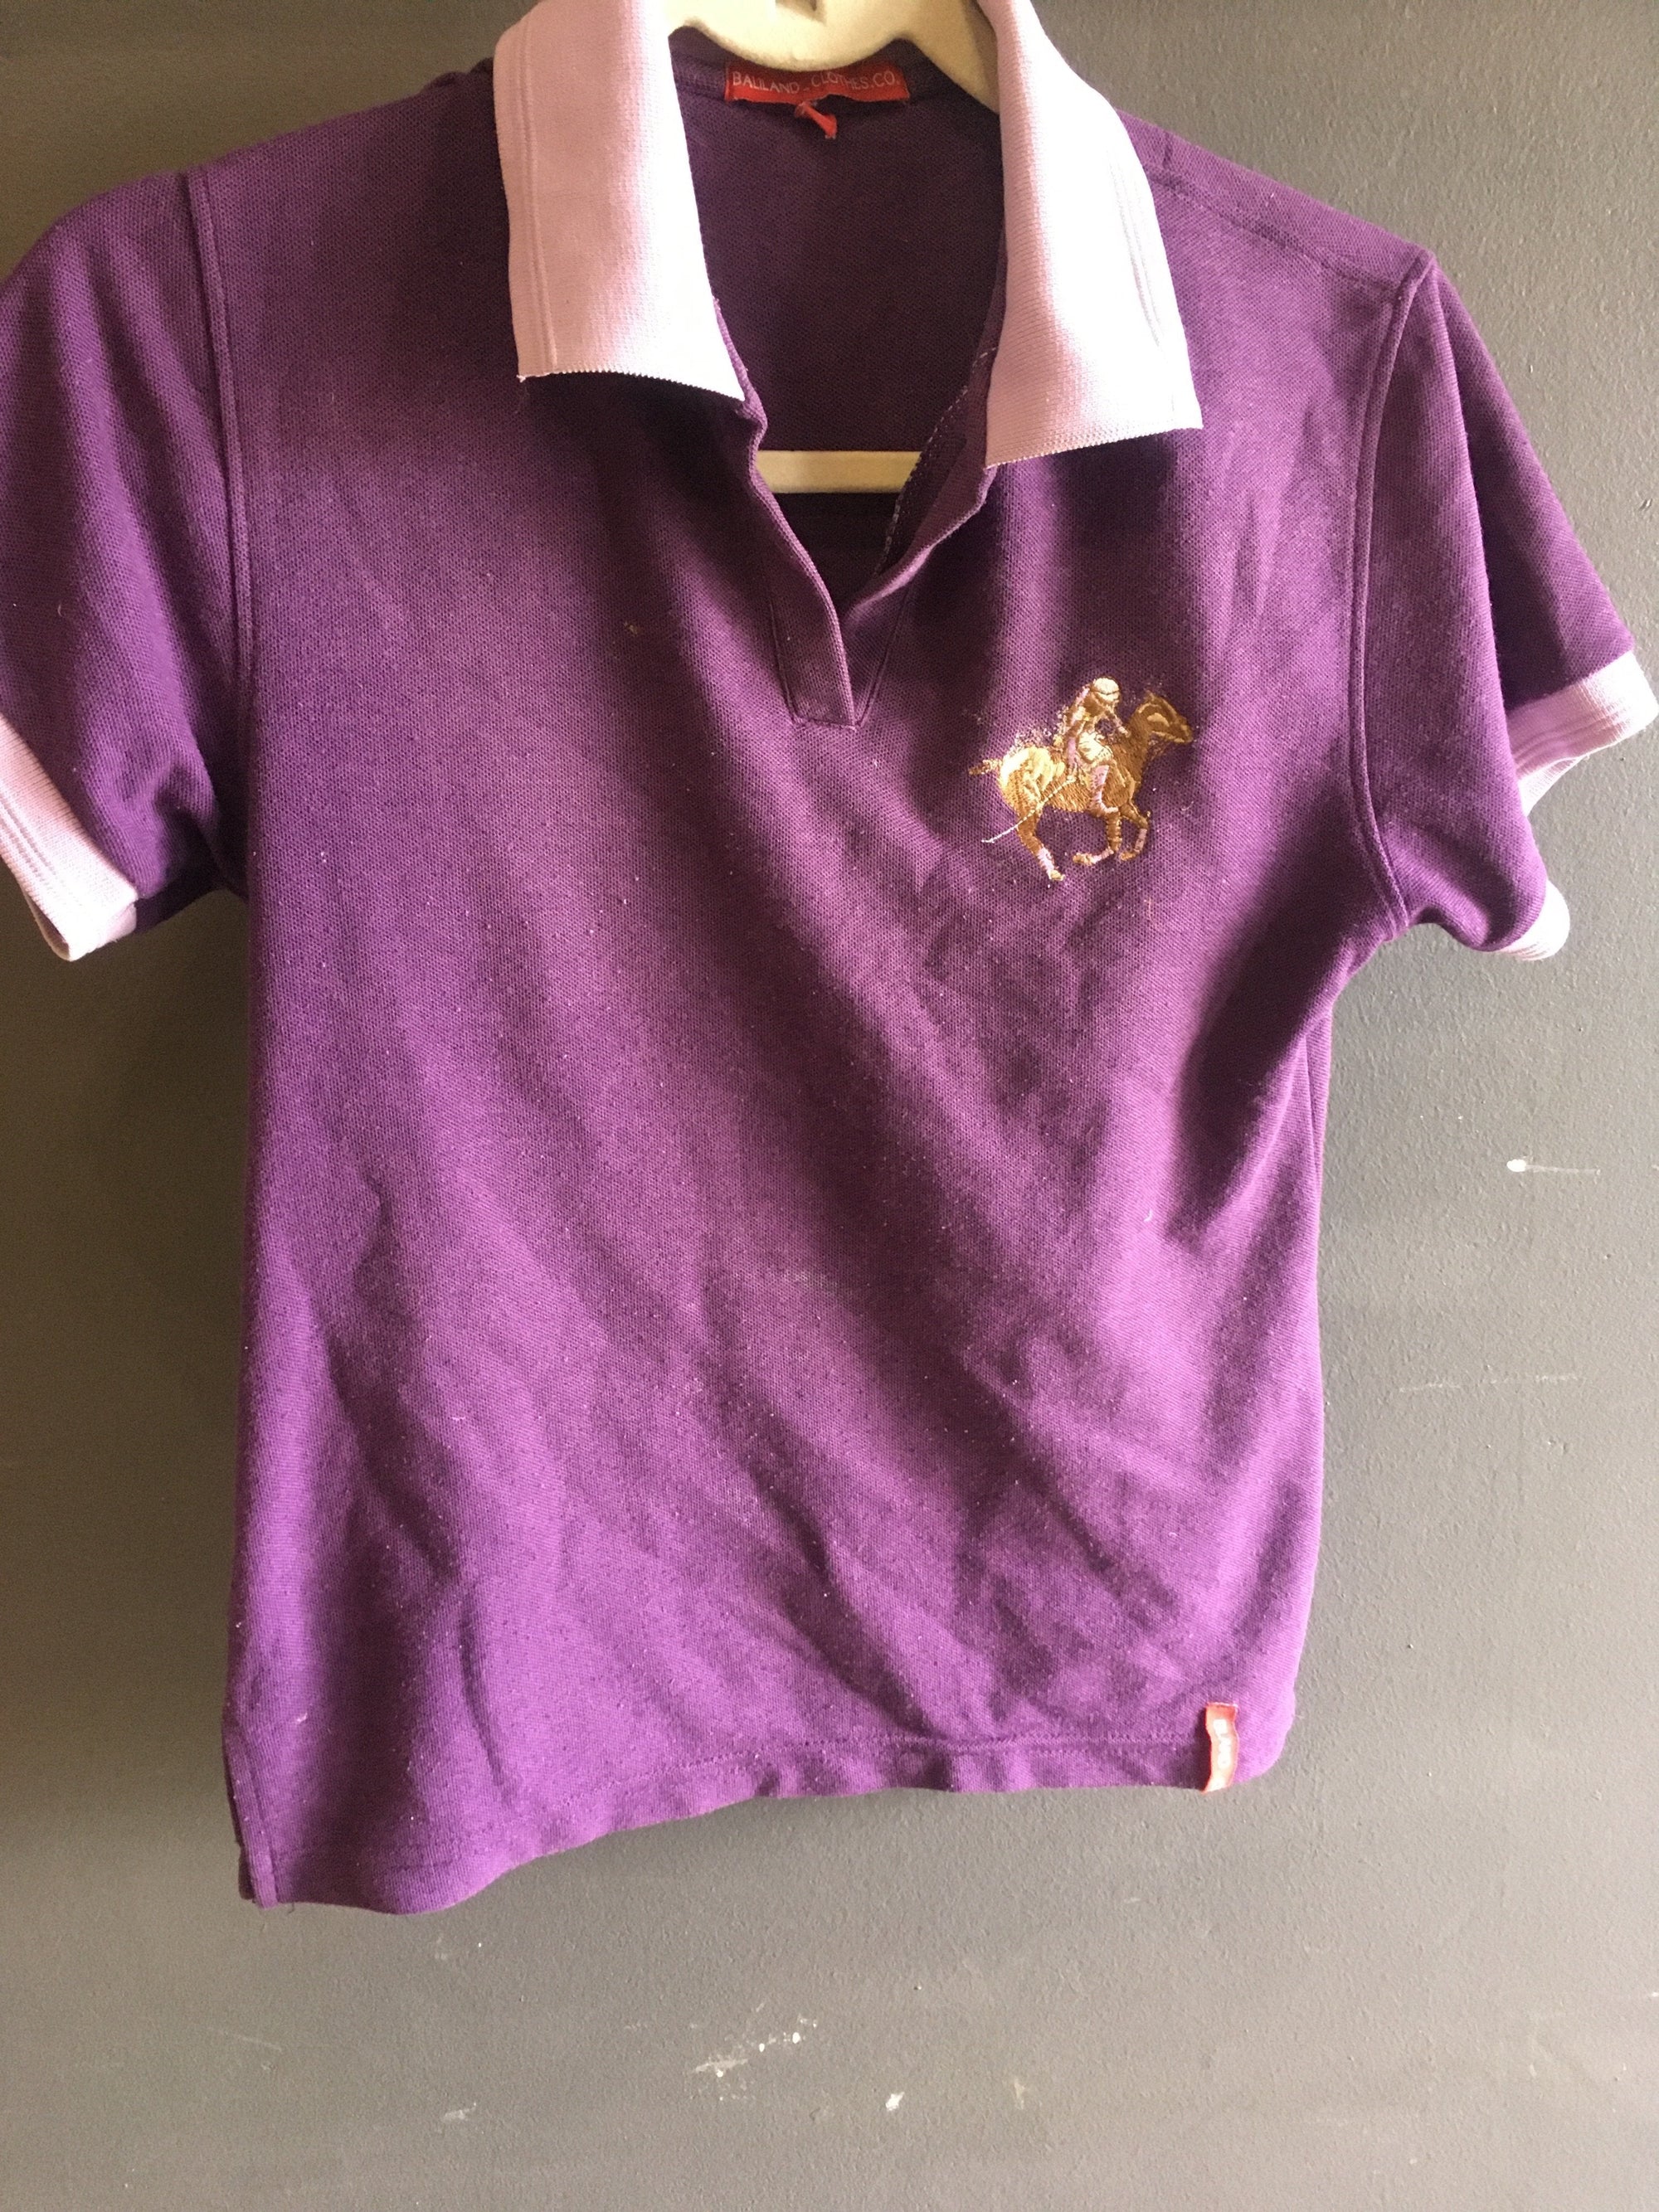 Purple T Shirt - 2ndhandwarehouse.com